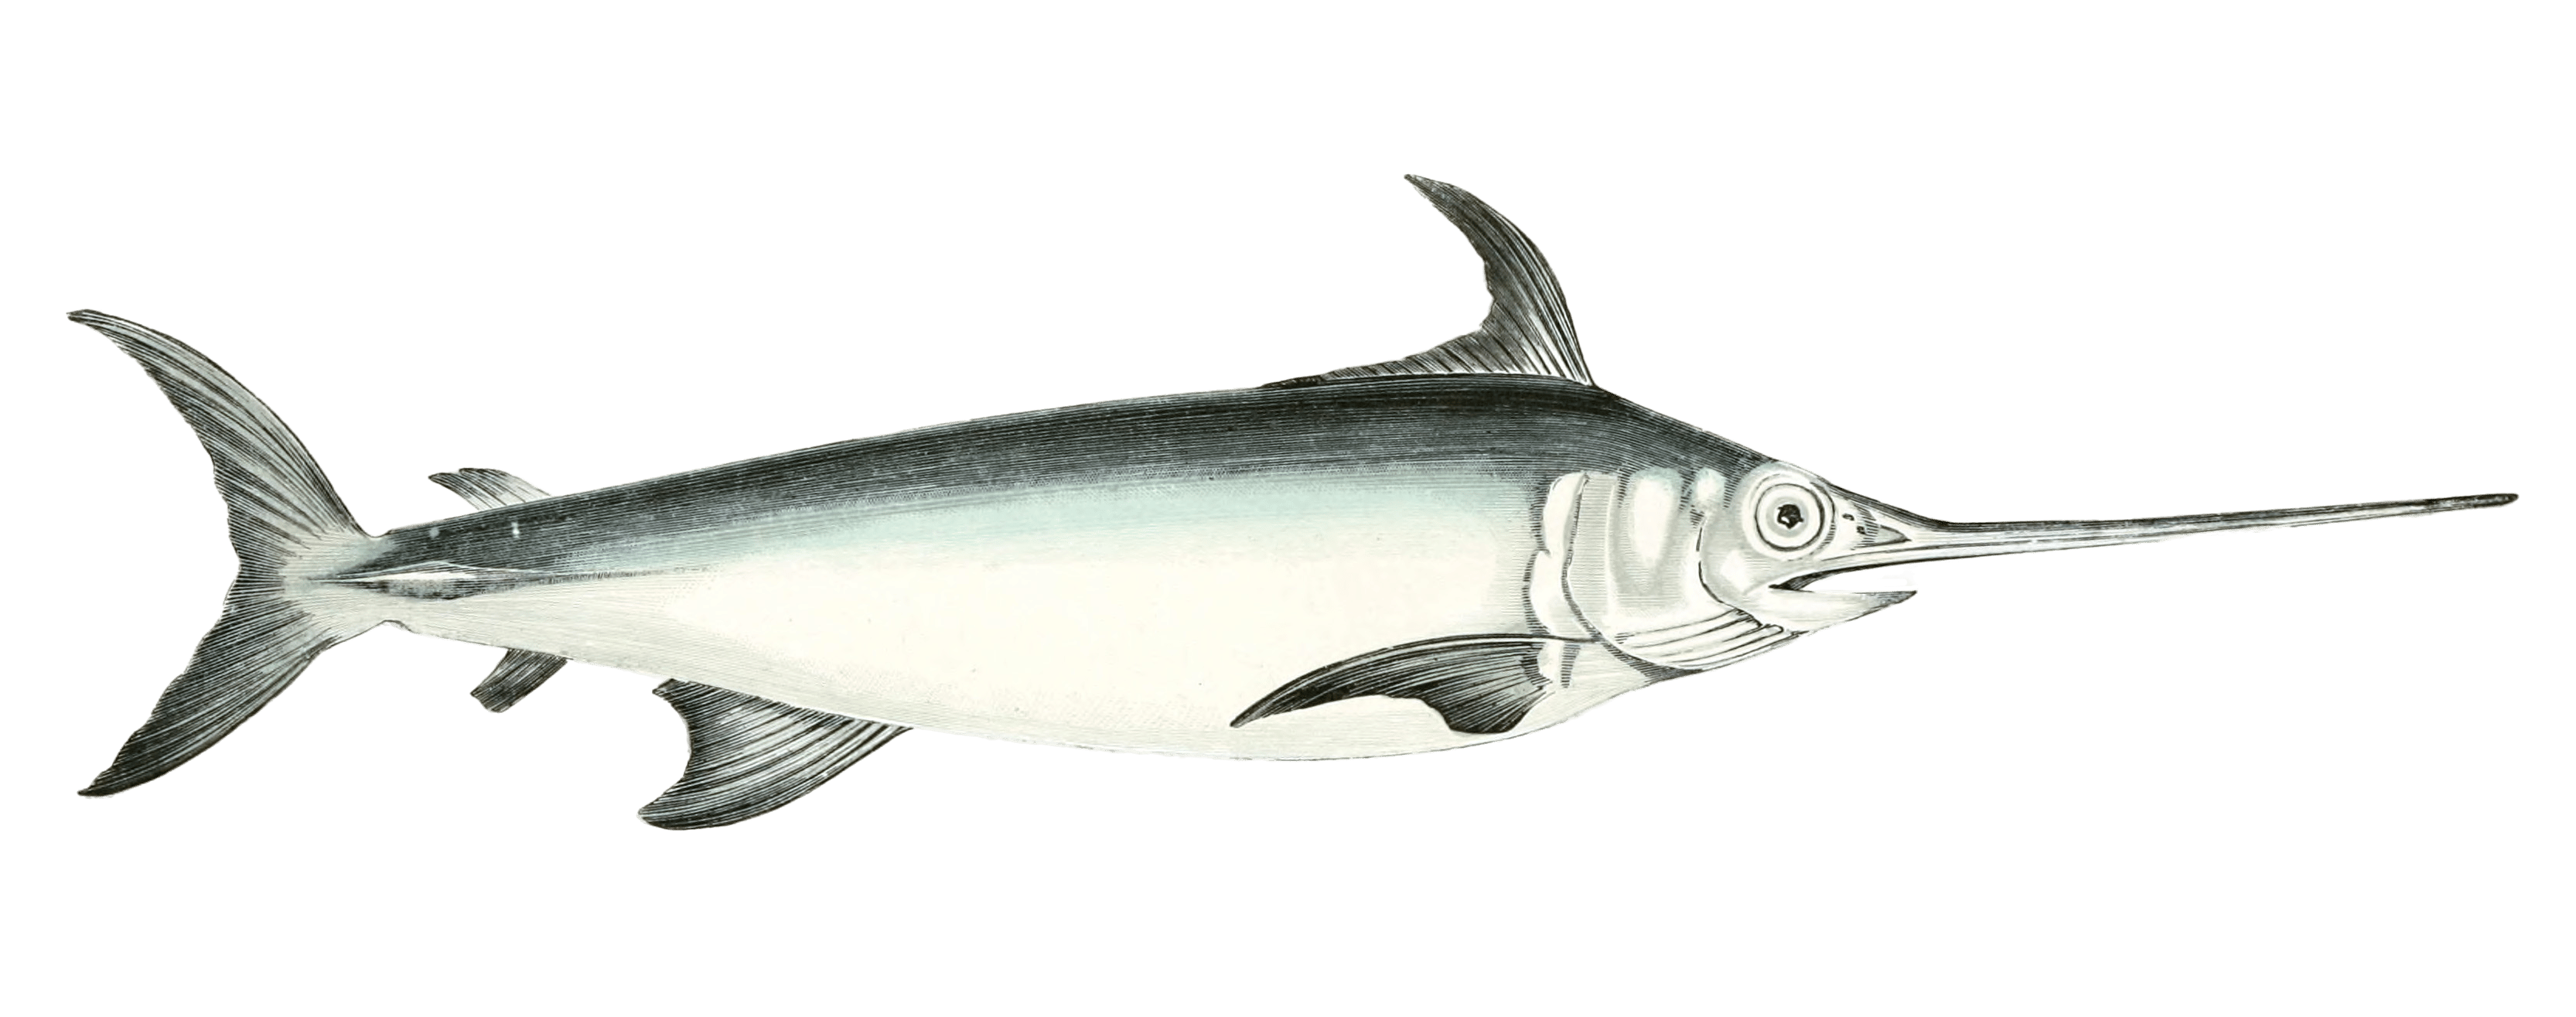 Swordfish Vintage Illustration